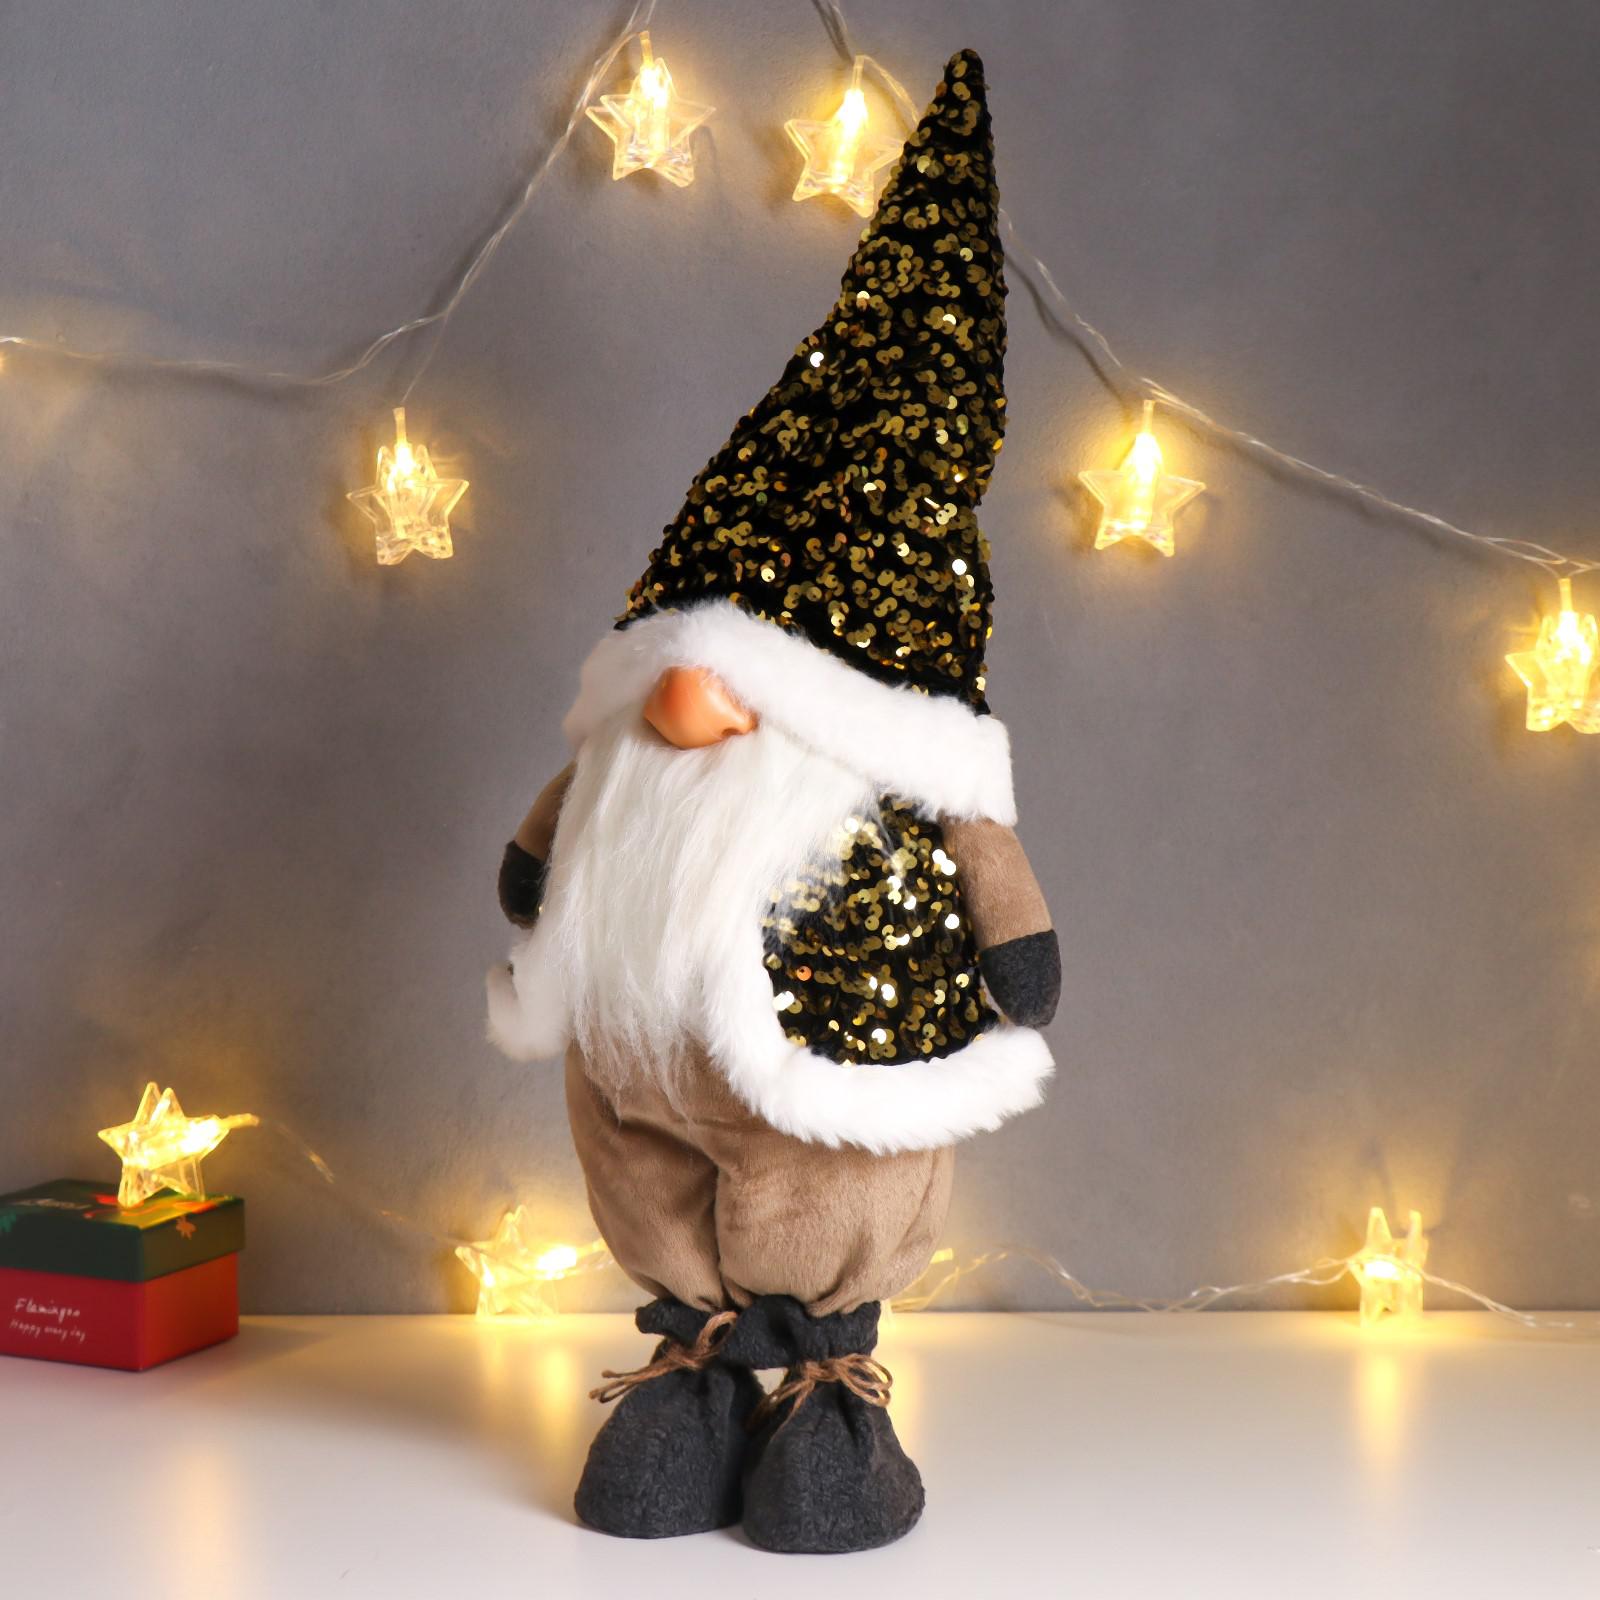 Кукла интерьерная Зимнее волшебство «Дед Мороз в золотом колпаке и жилетке с пайетками» 55х16х22 см - фото 4